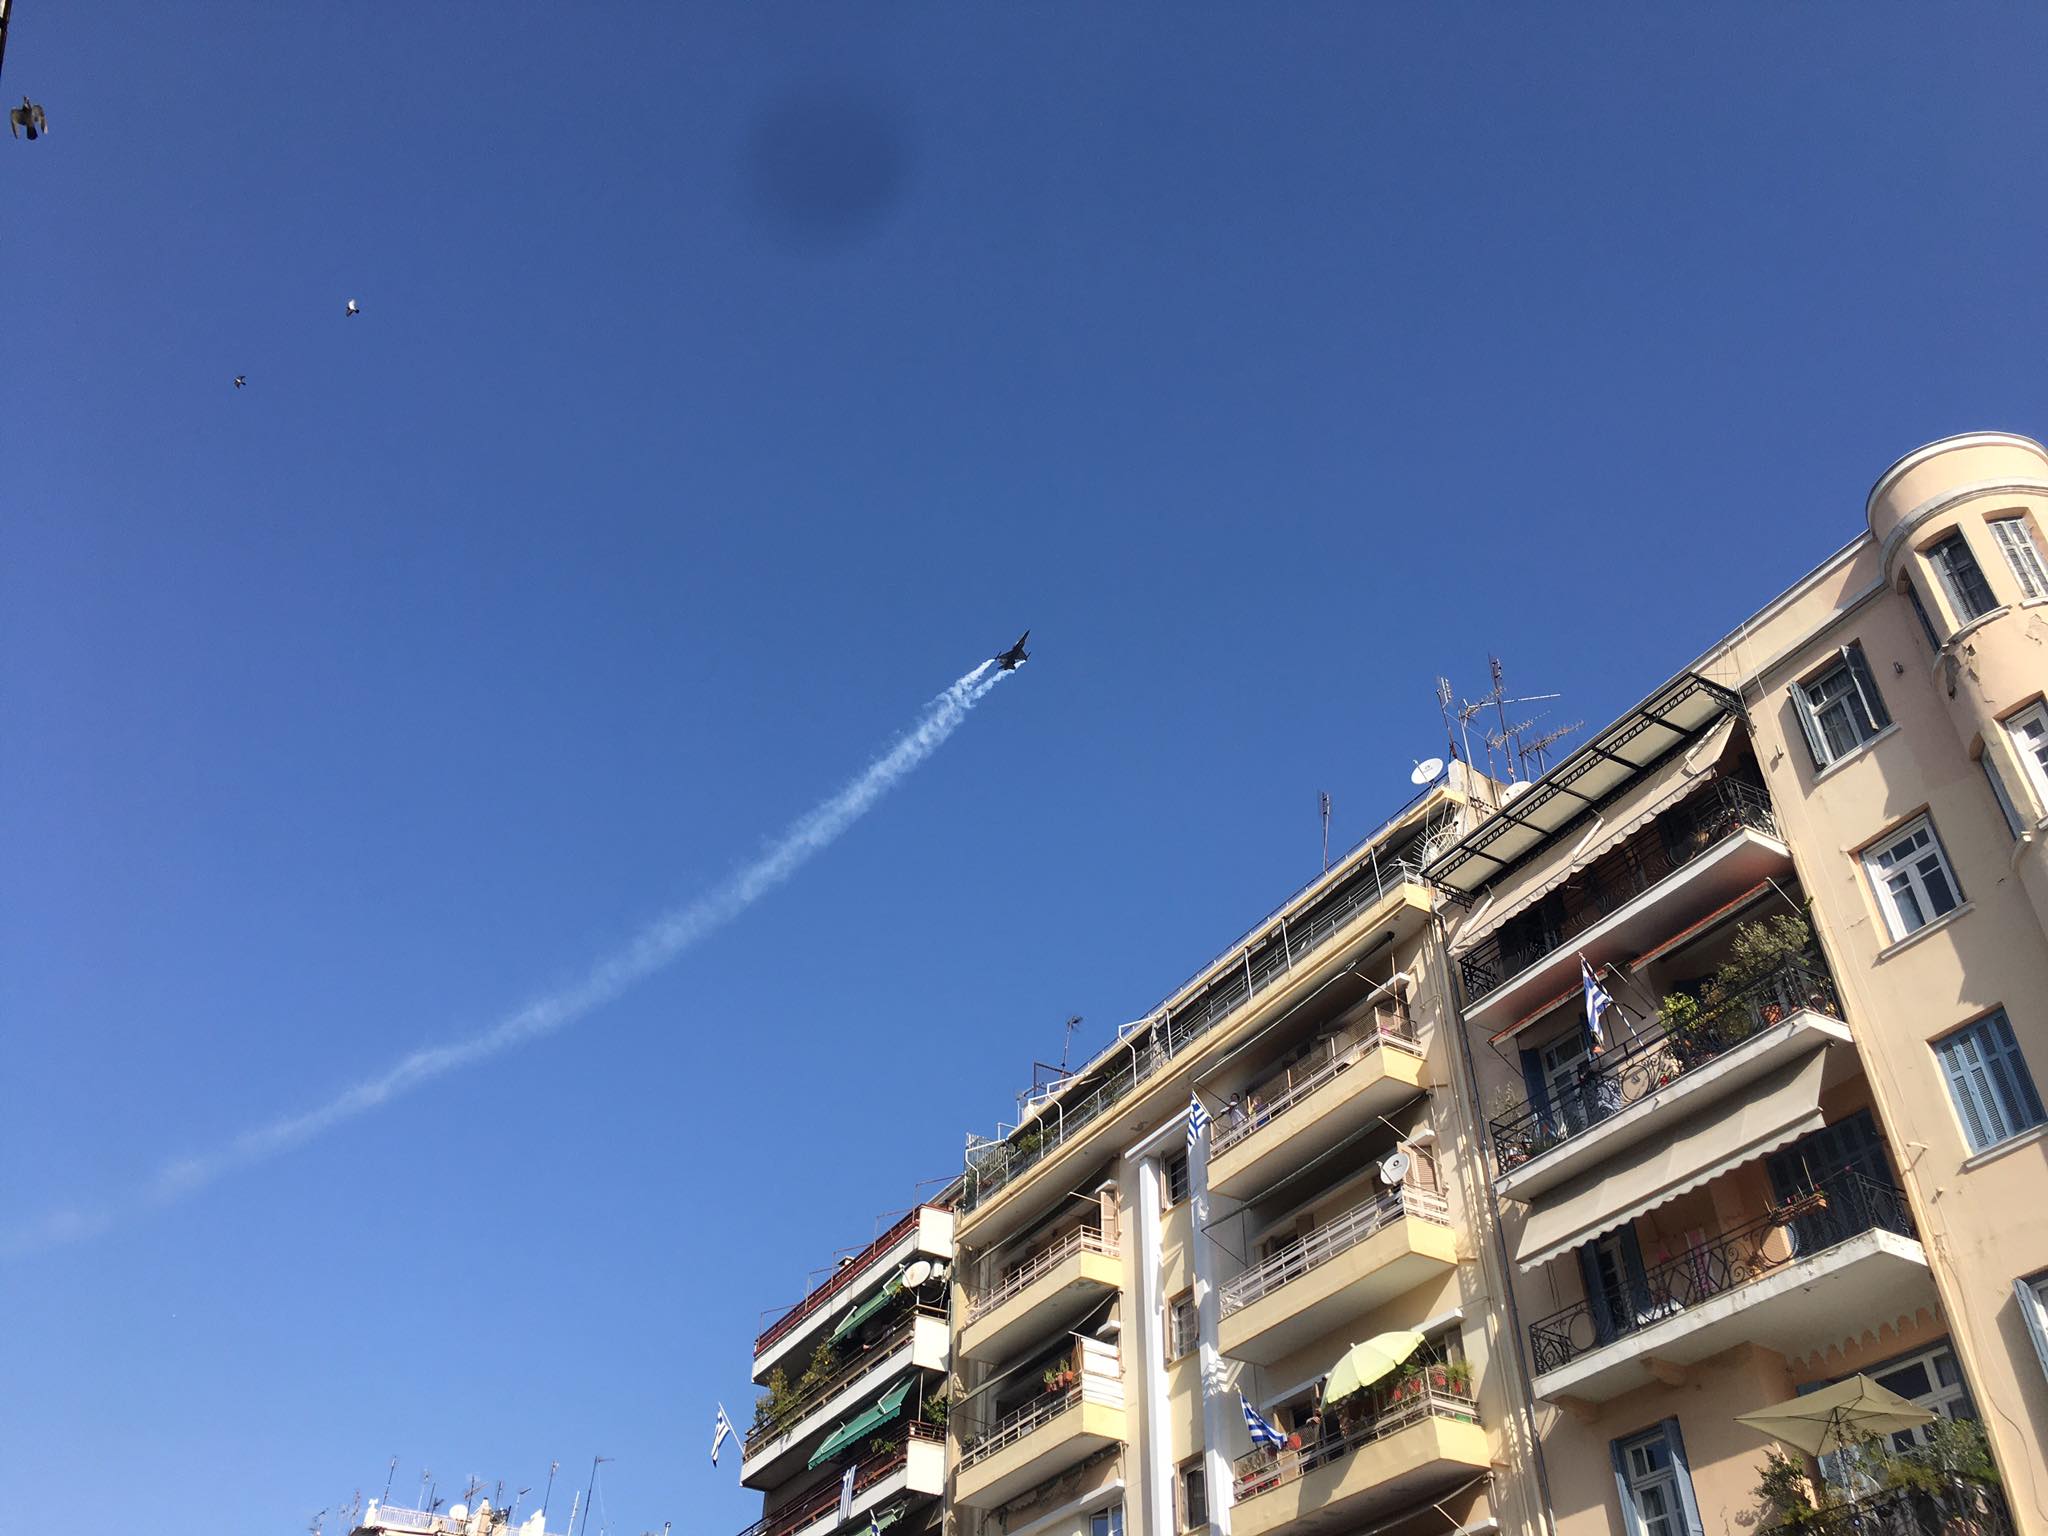 Θεσσαλονίκη: Ο “Ζευς” της Πολεμικής Αεροπορίας στον ουρανό της πόλης